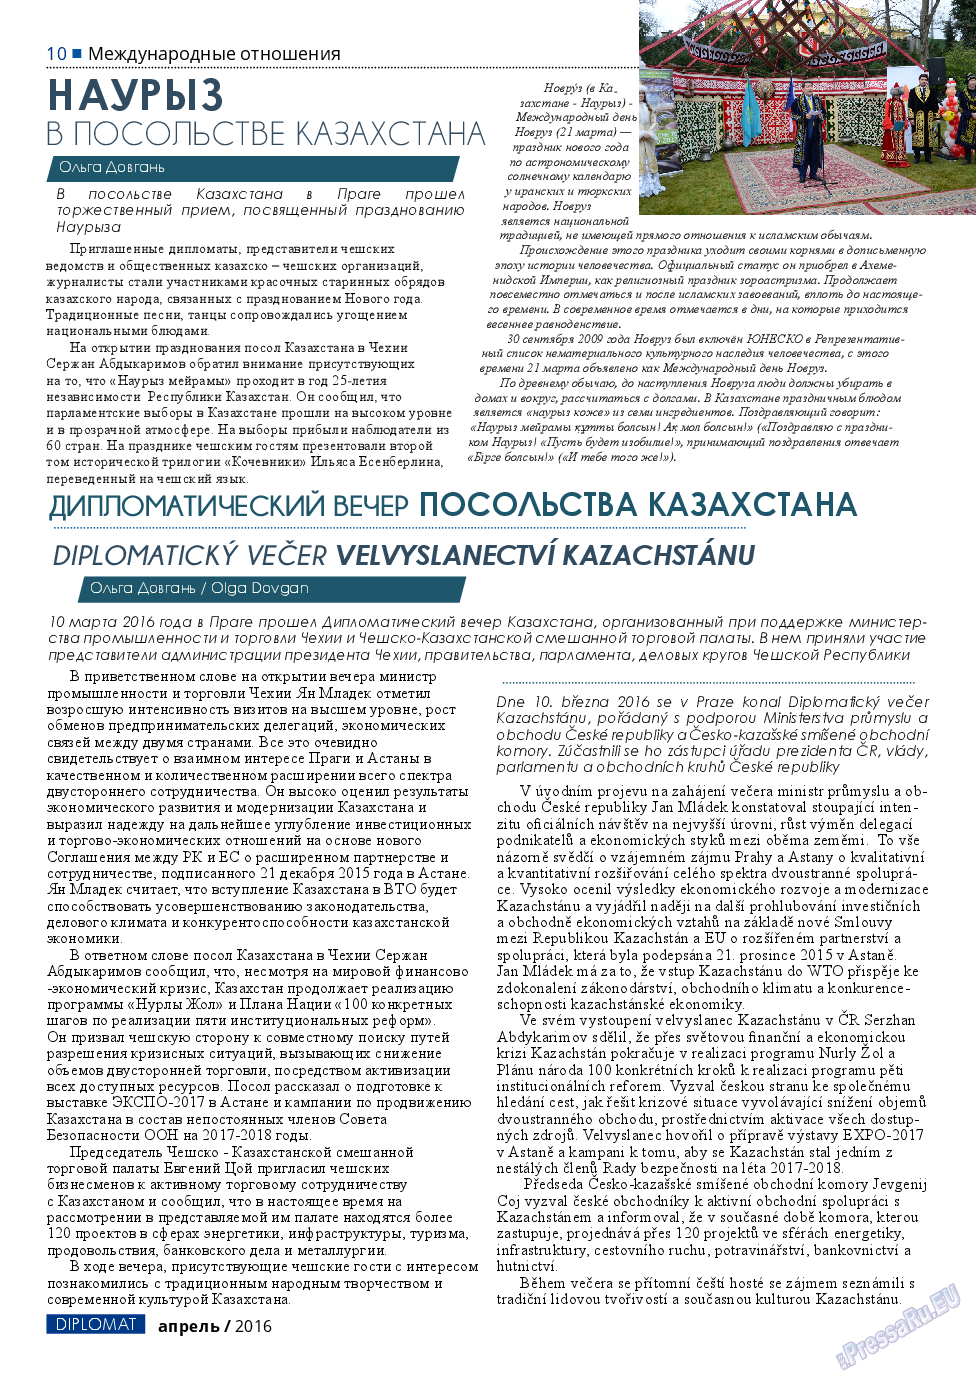 Diplomat (газета). 2016 год, номер 79, стр. 10